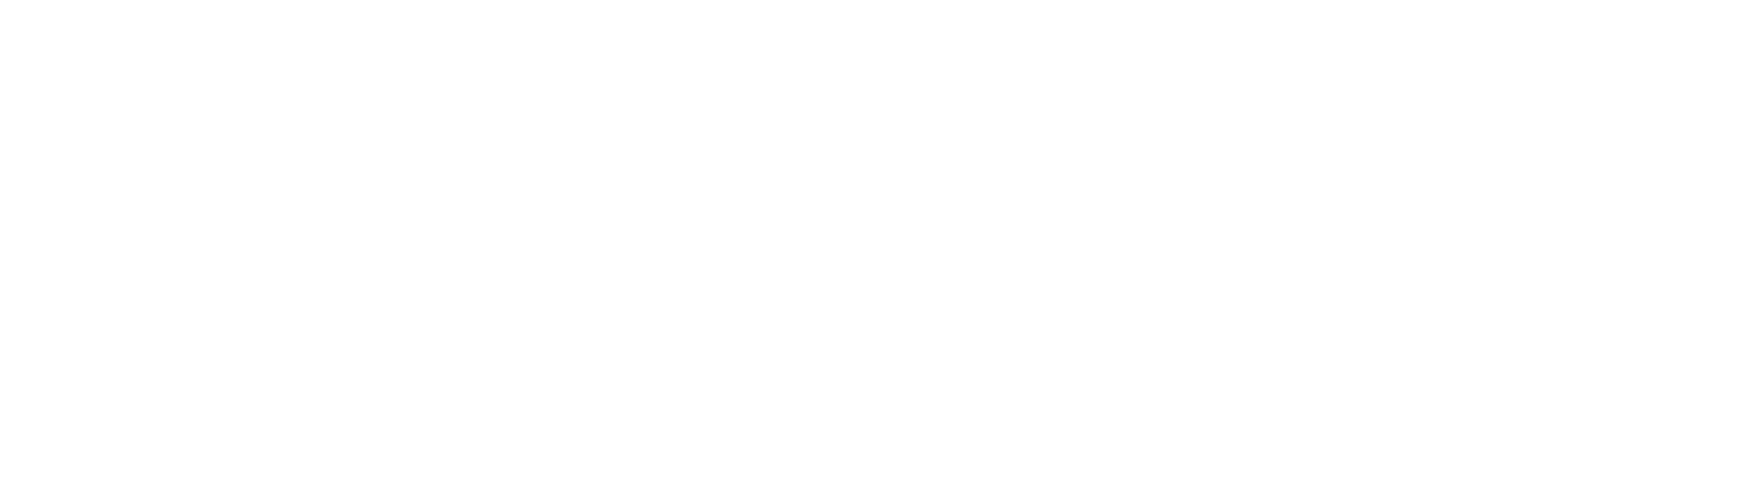 Trader Carology 2021